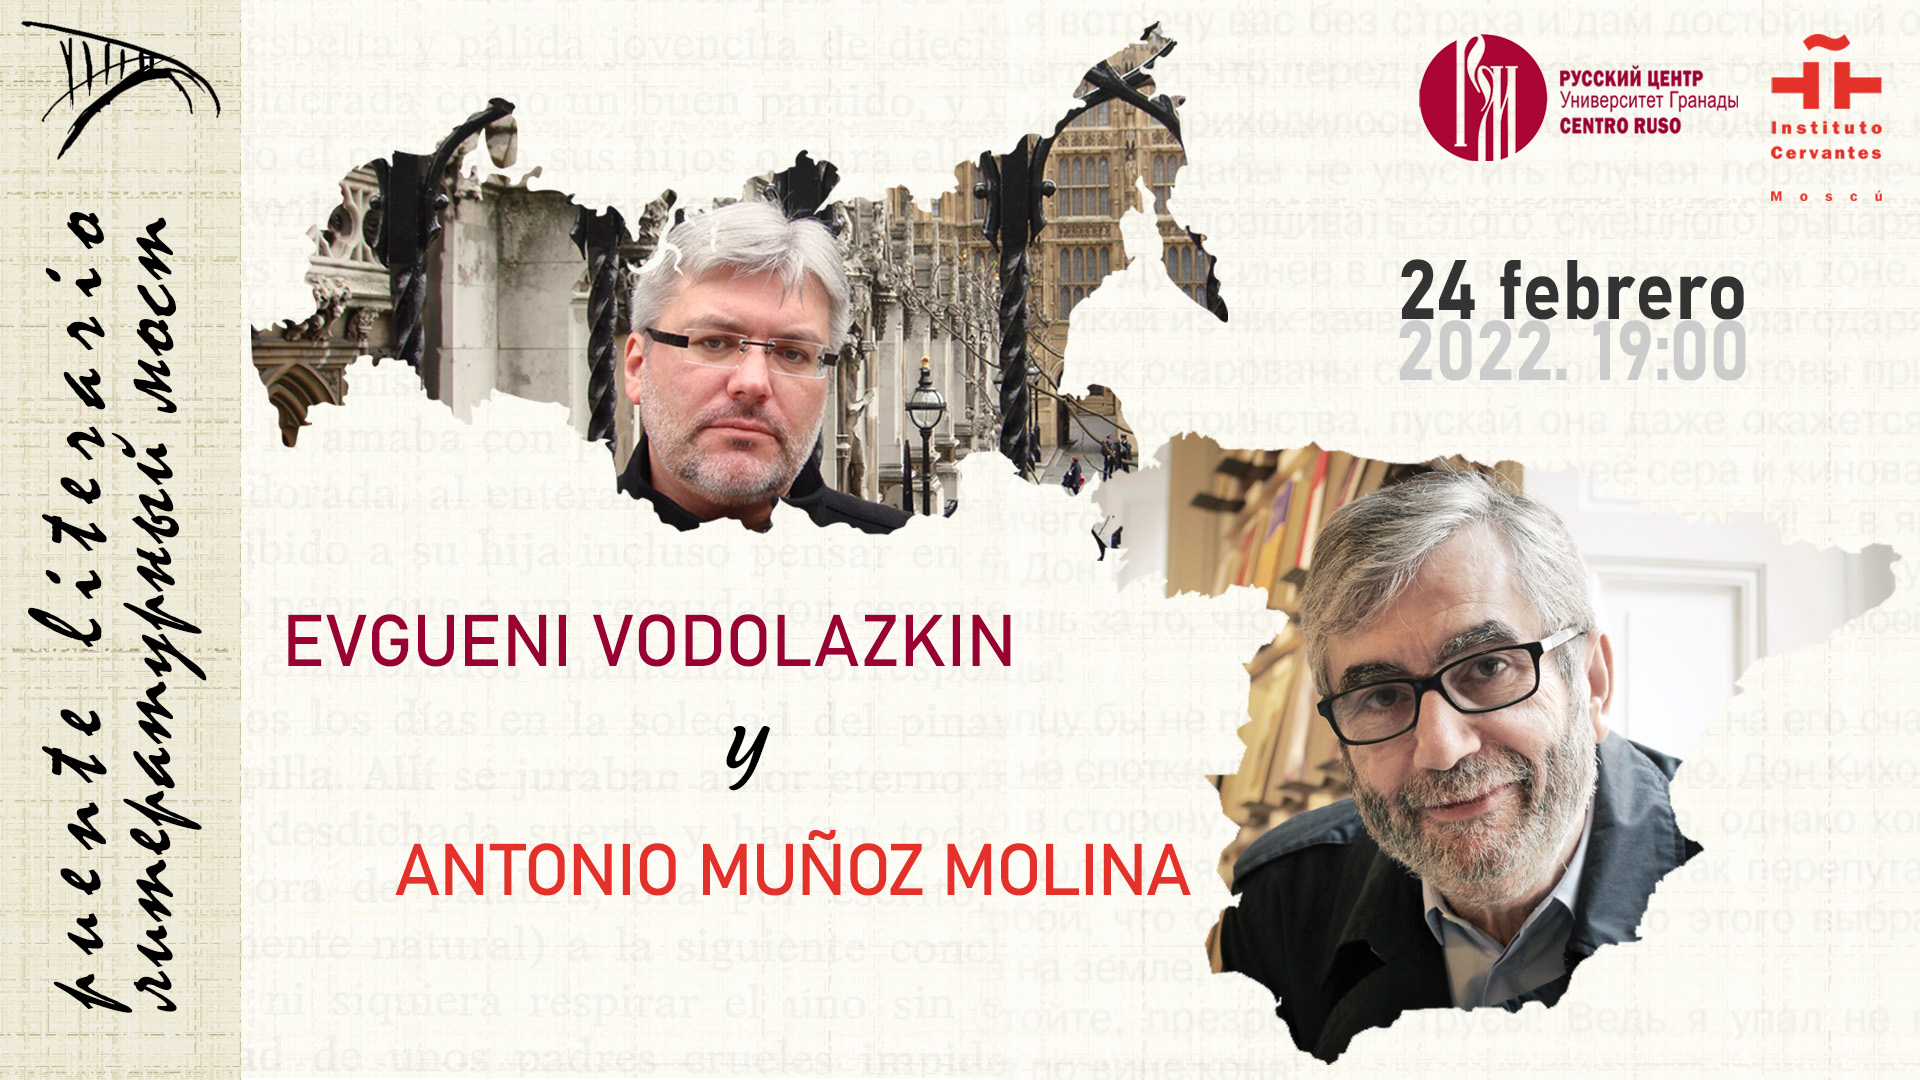 Antonio Muñoz Molina & Evgueni Vodolazkin